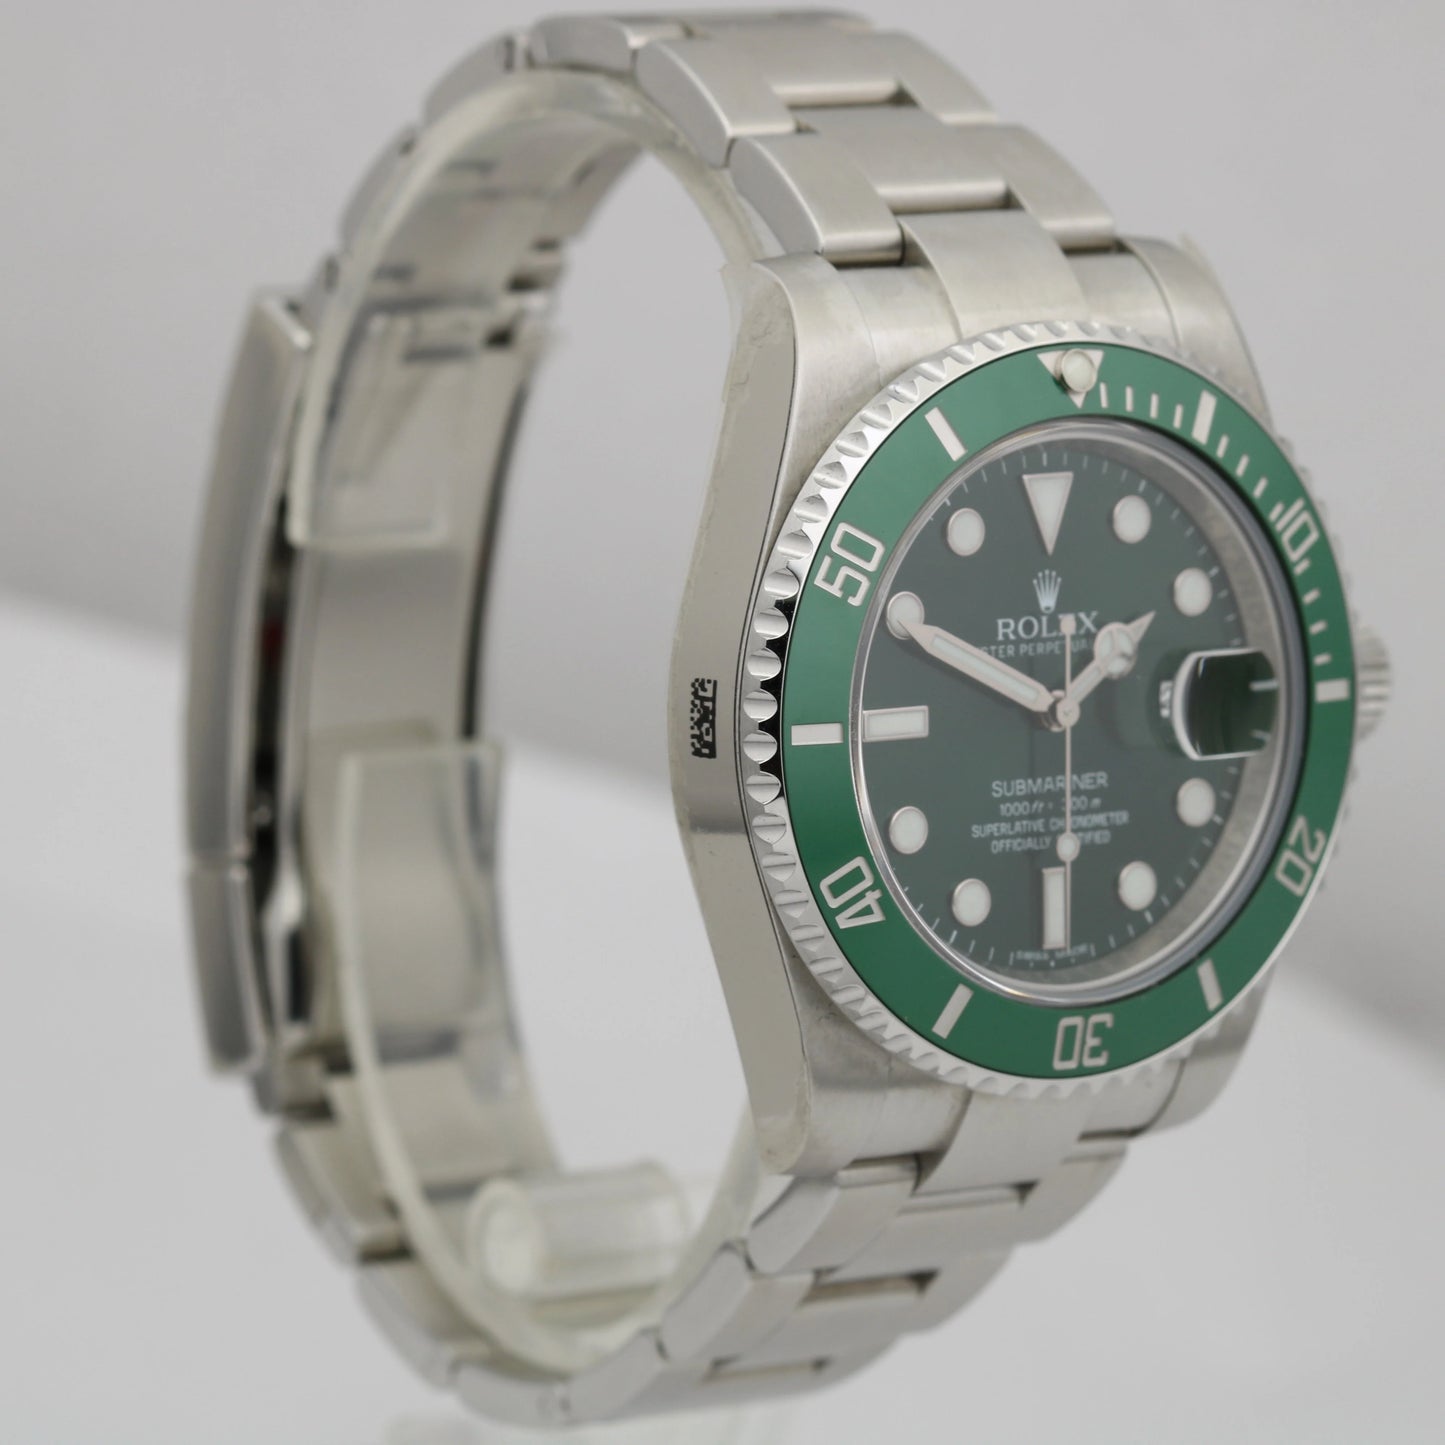 STICKERED UNDATED NEW CARD Rolex Submariner HULK Green 116610 LV 40mm Watch